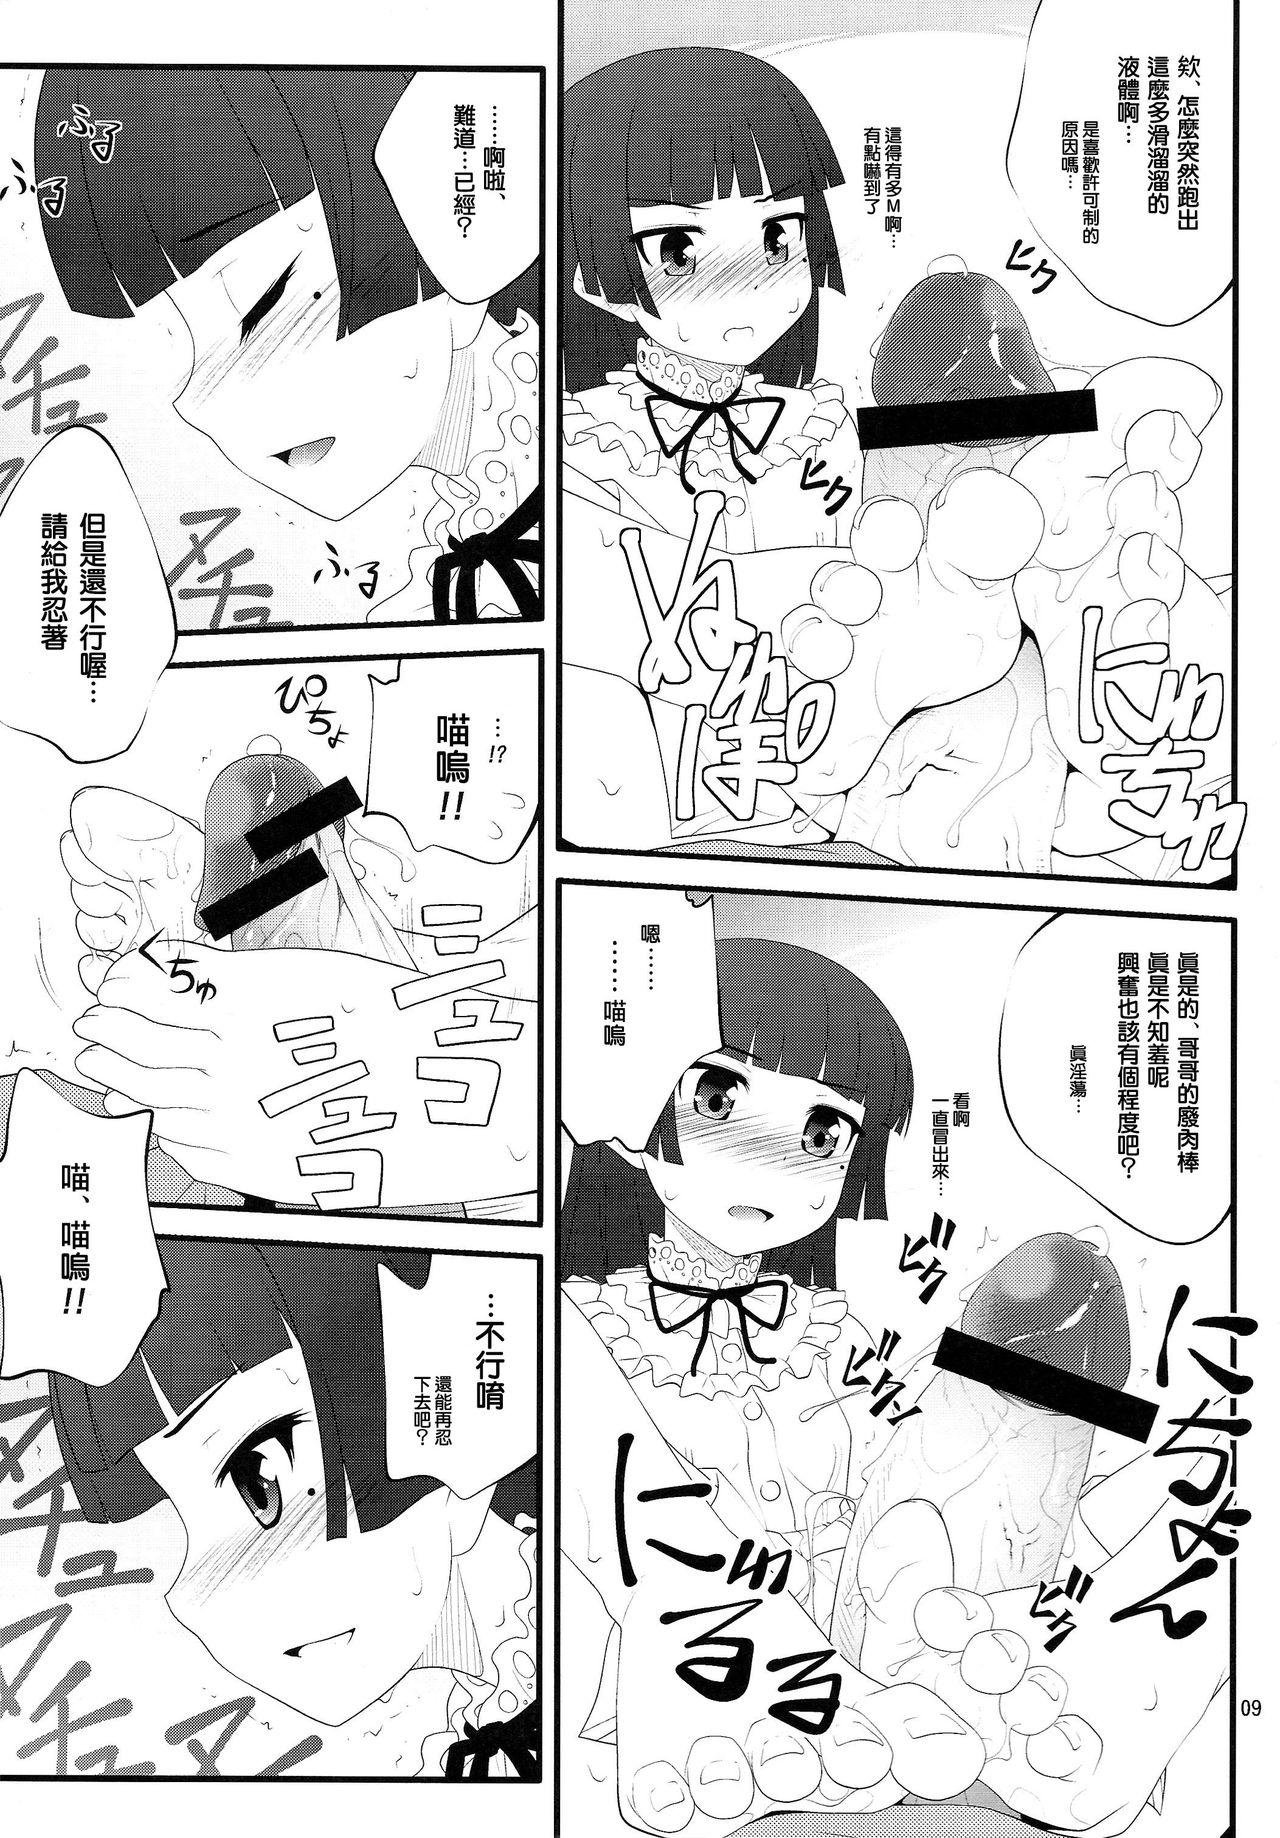 Pelada Nii-san, Ashi Monde Choudai After - Ore no imouto ga konna ni kawaii wake ga nai Assfuck - Page 9